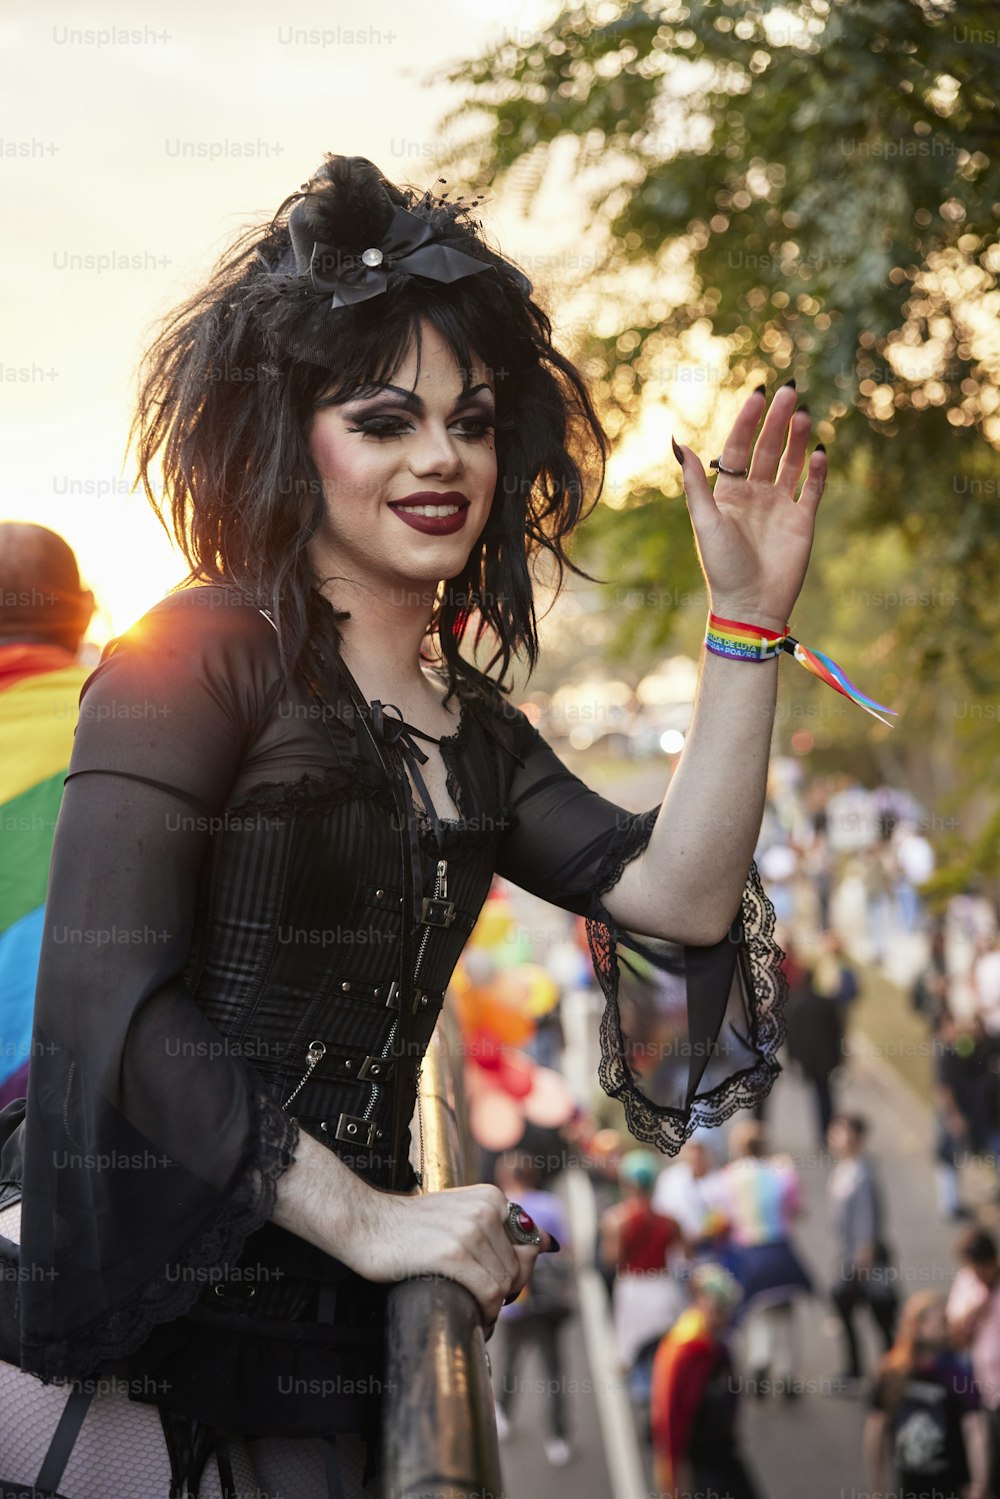 Una mujer con cabello oscuro y maquillaje sosteniendo una bandera del arco iris